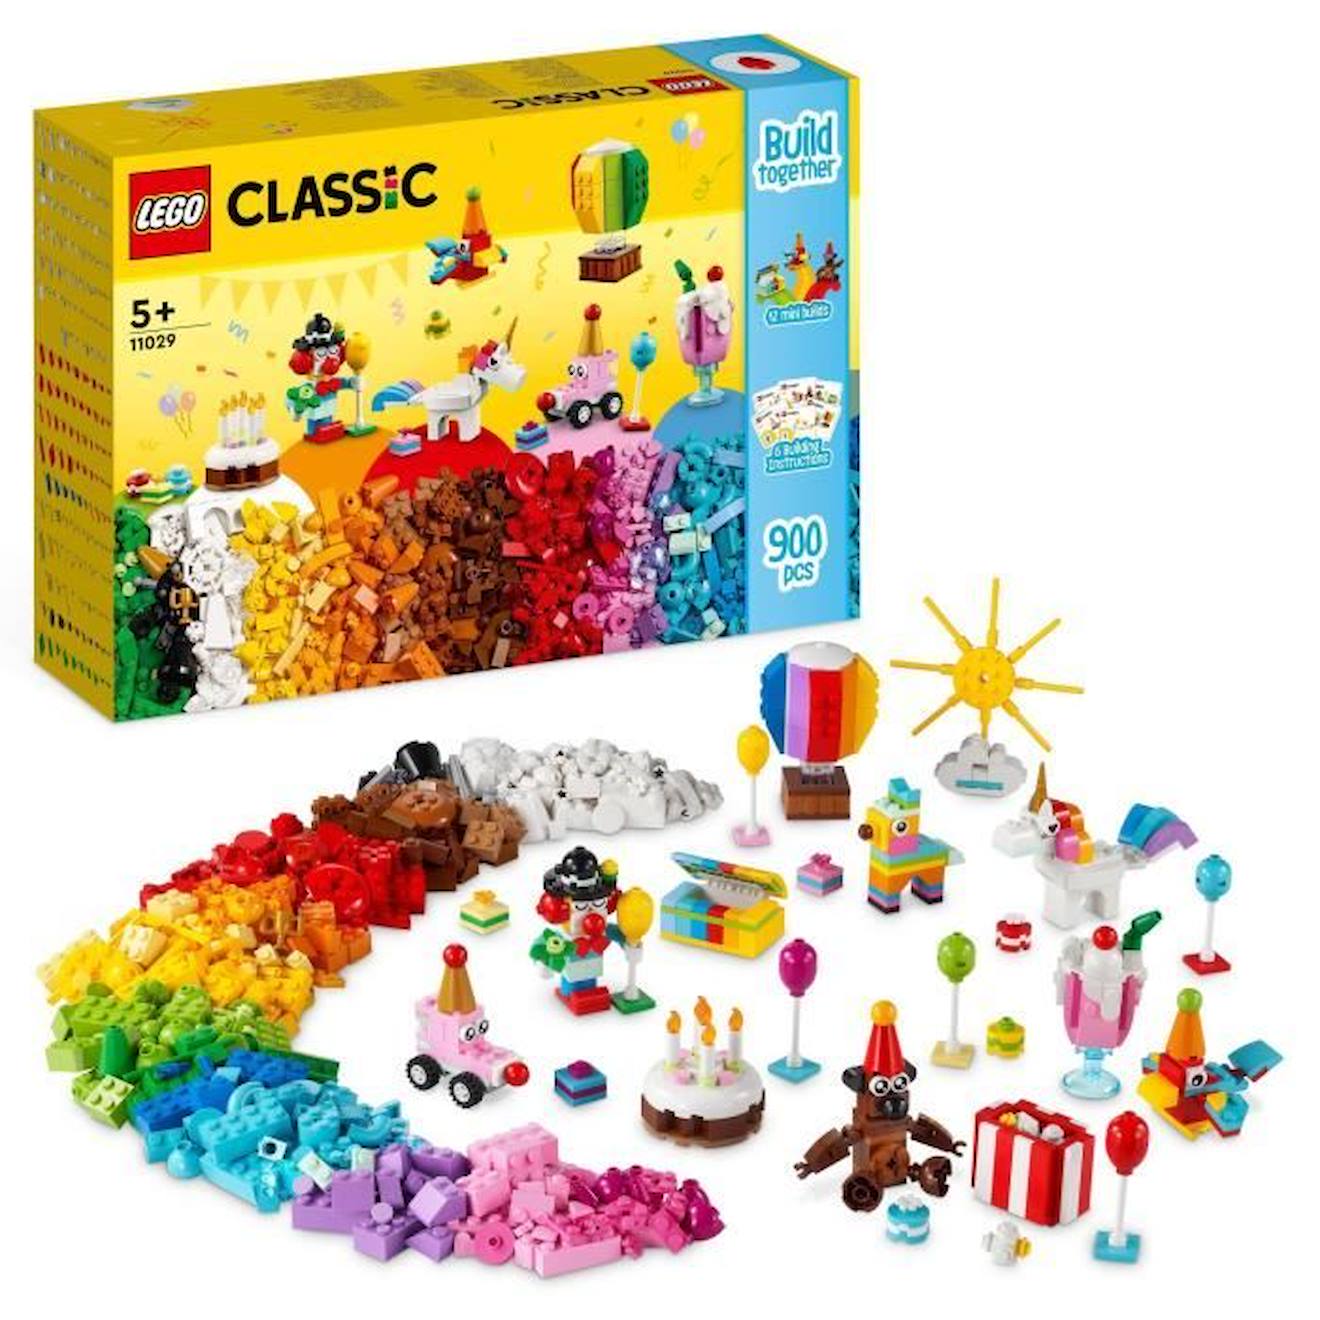 Lego® Classic 11029 Boîte De Fête Créative Avec 12 Mini Jouets En Briques : Licorne, Clown Blanc